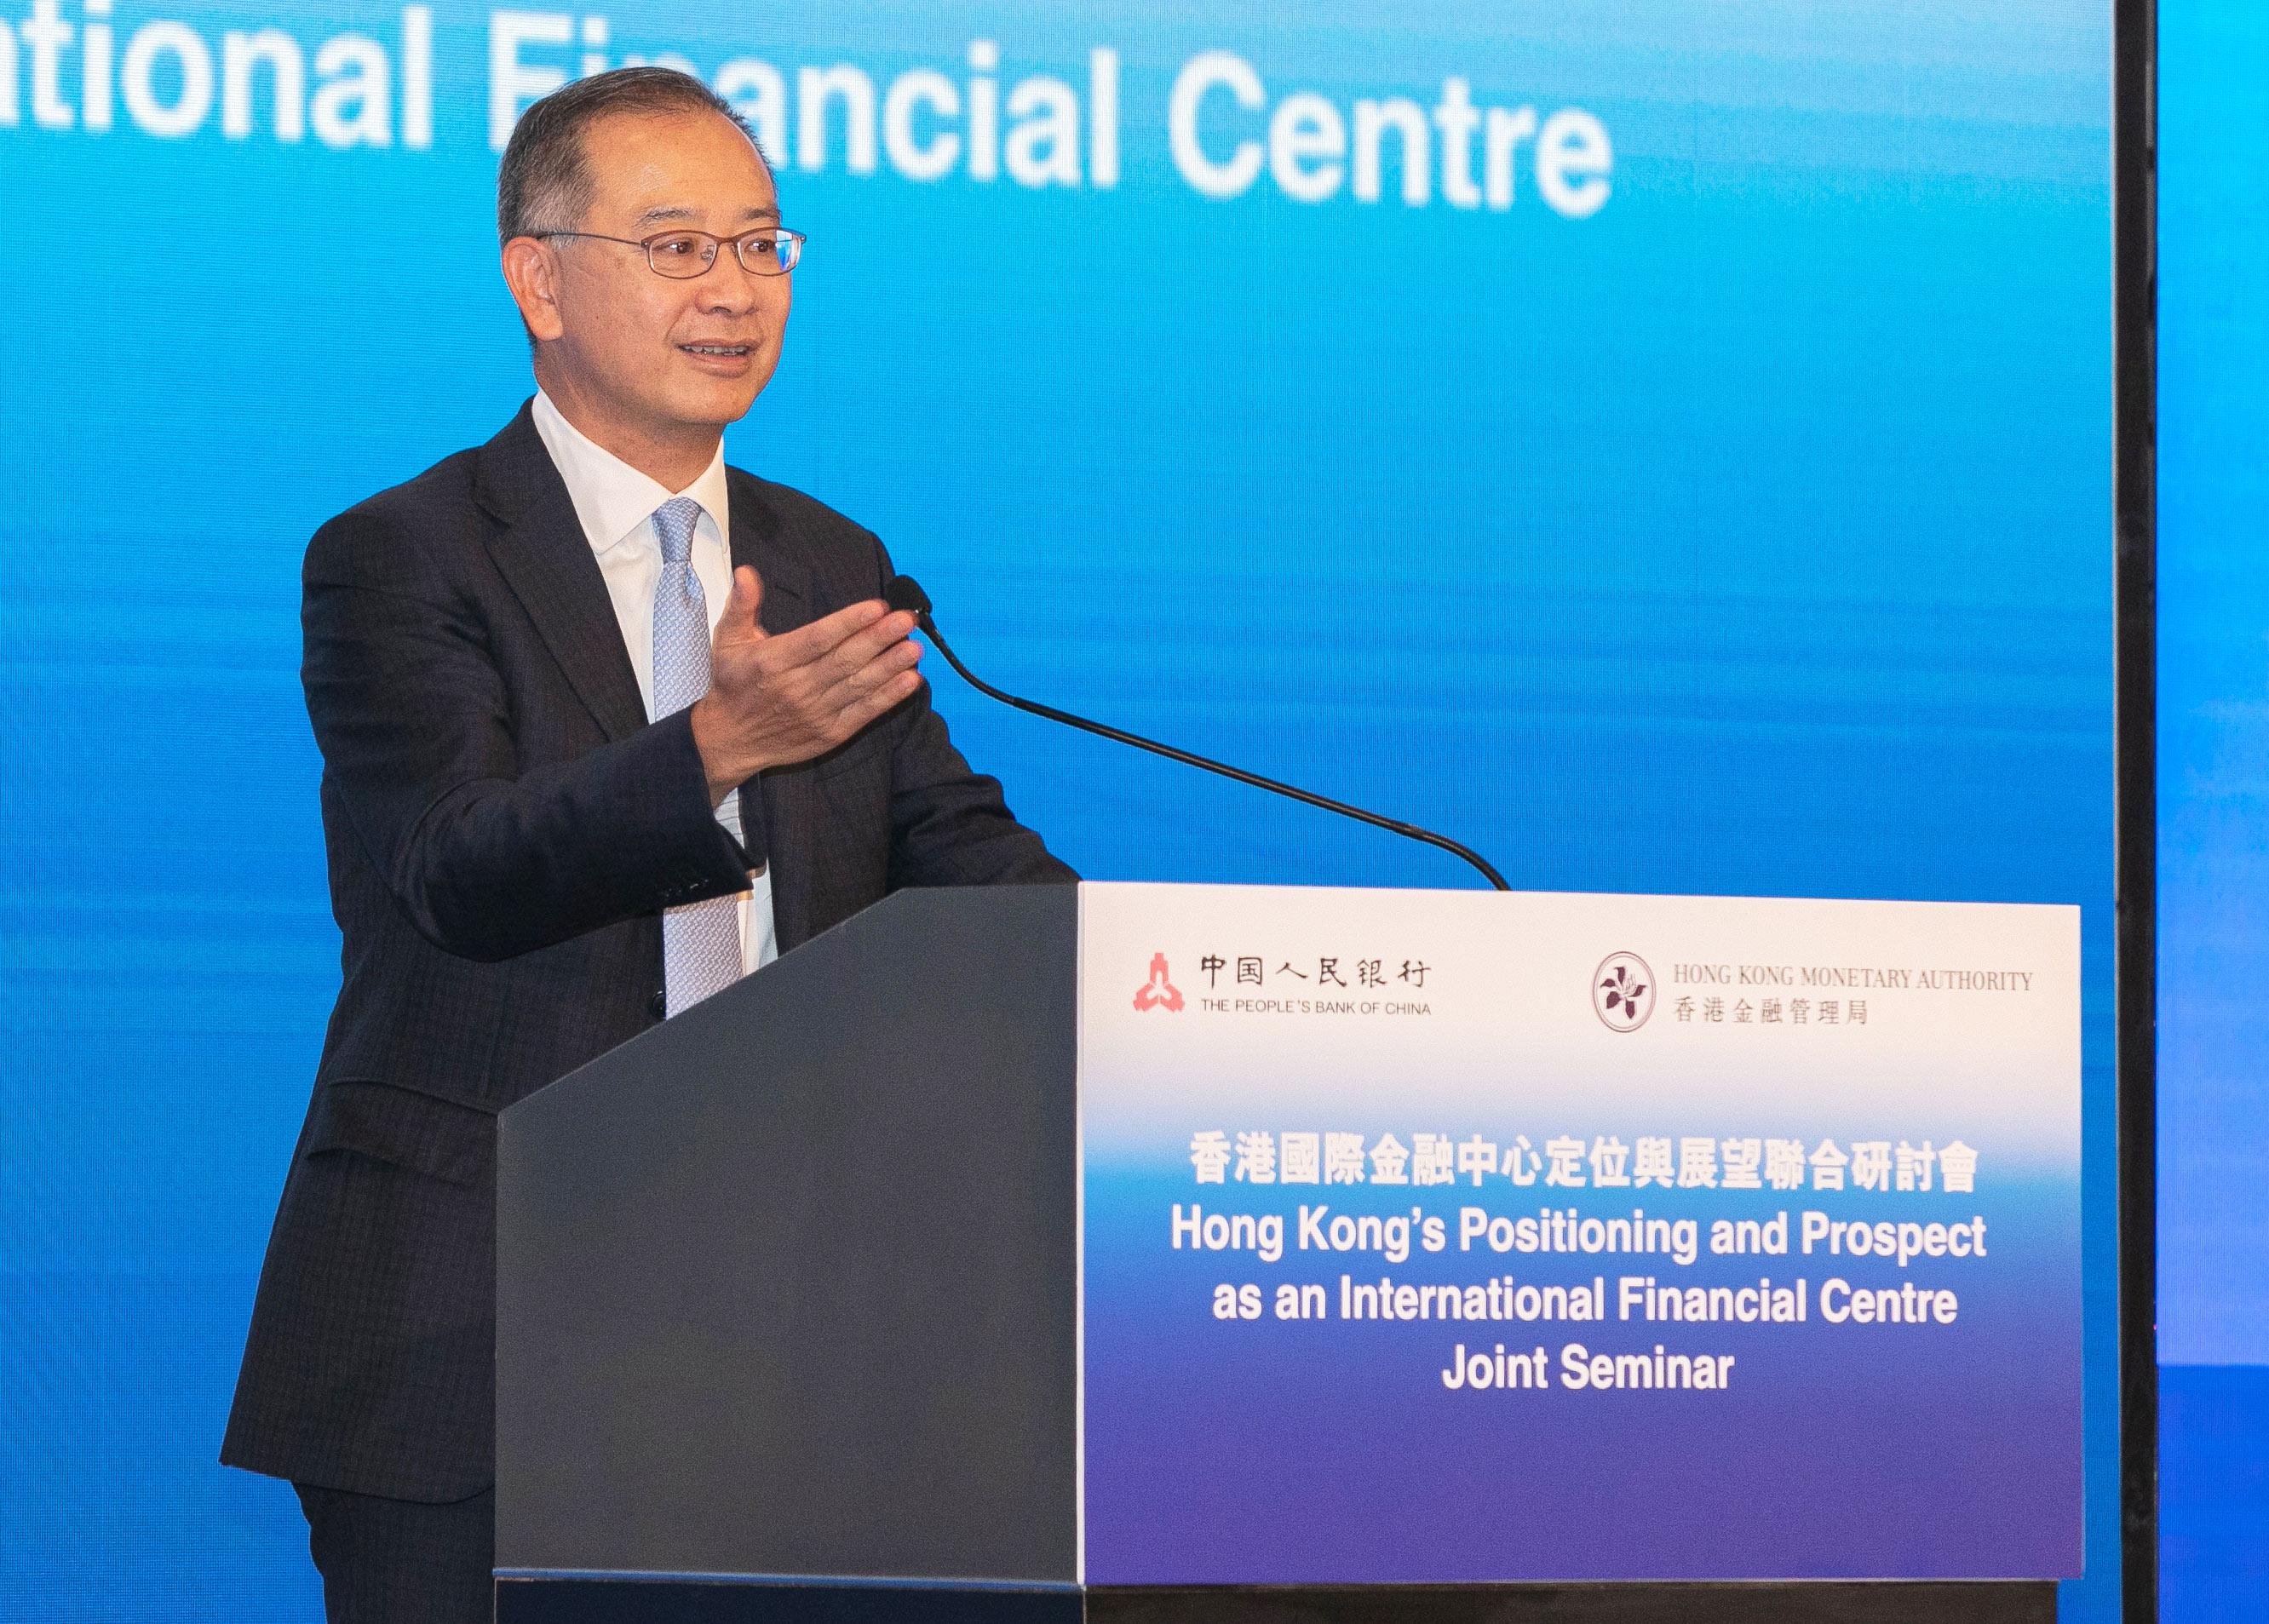 香港金融管理局總裁余偉文十二月九日於「香港國際金融中心定位與展望」主題研討會致開幕辭時強調，作為全球領先的國際金融中心，香港會善用獨特優勢，在多個金融領域不斷尋求新的突破和發展。